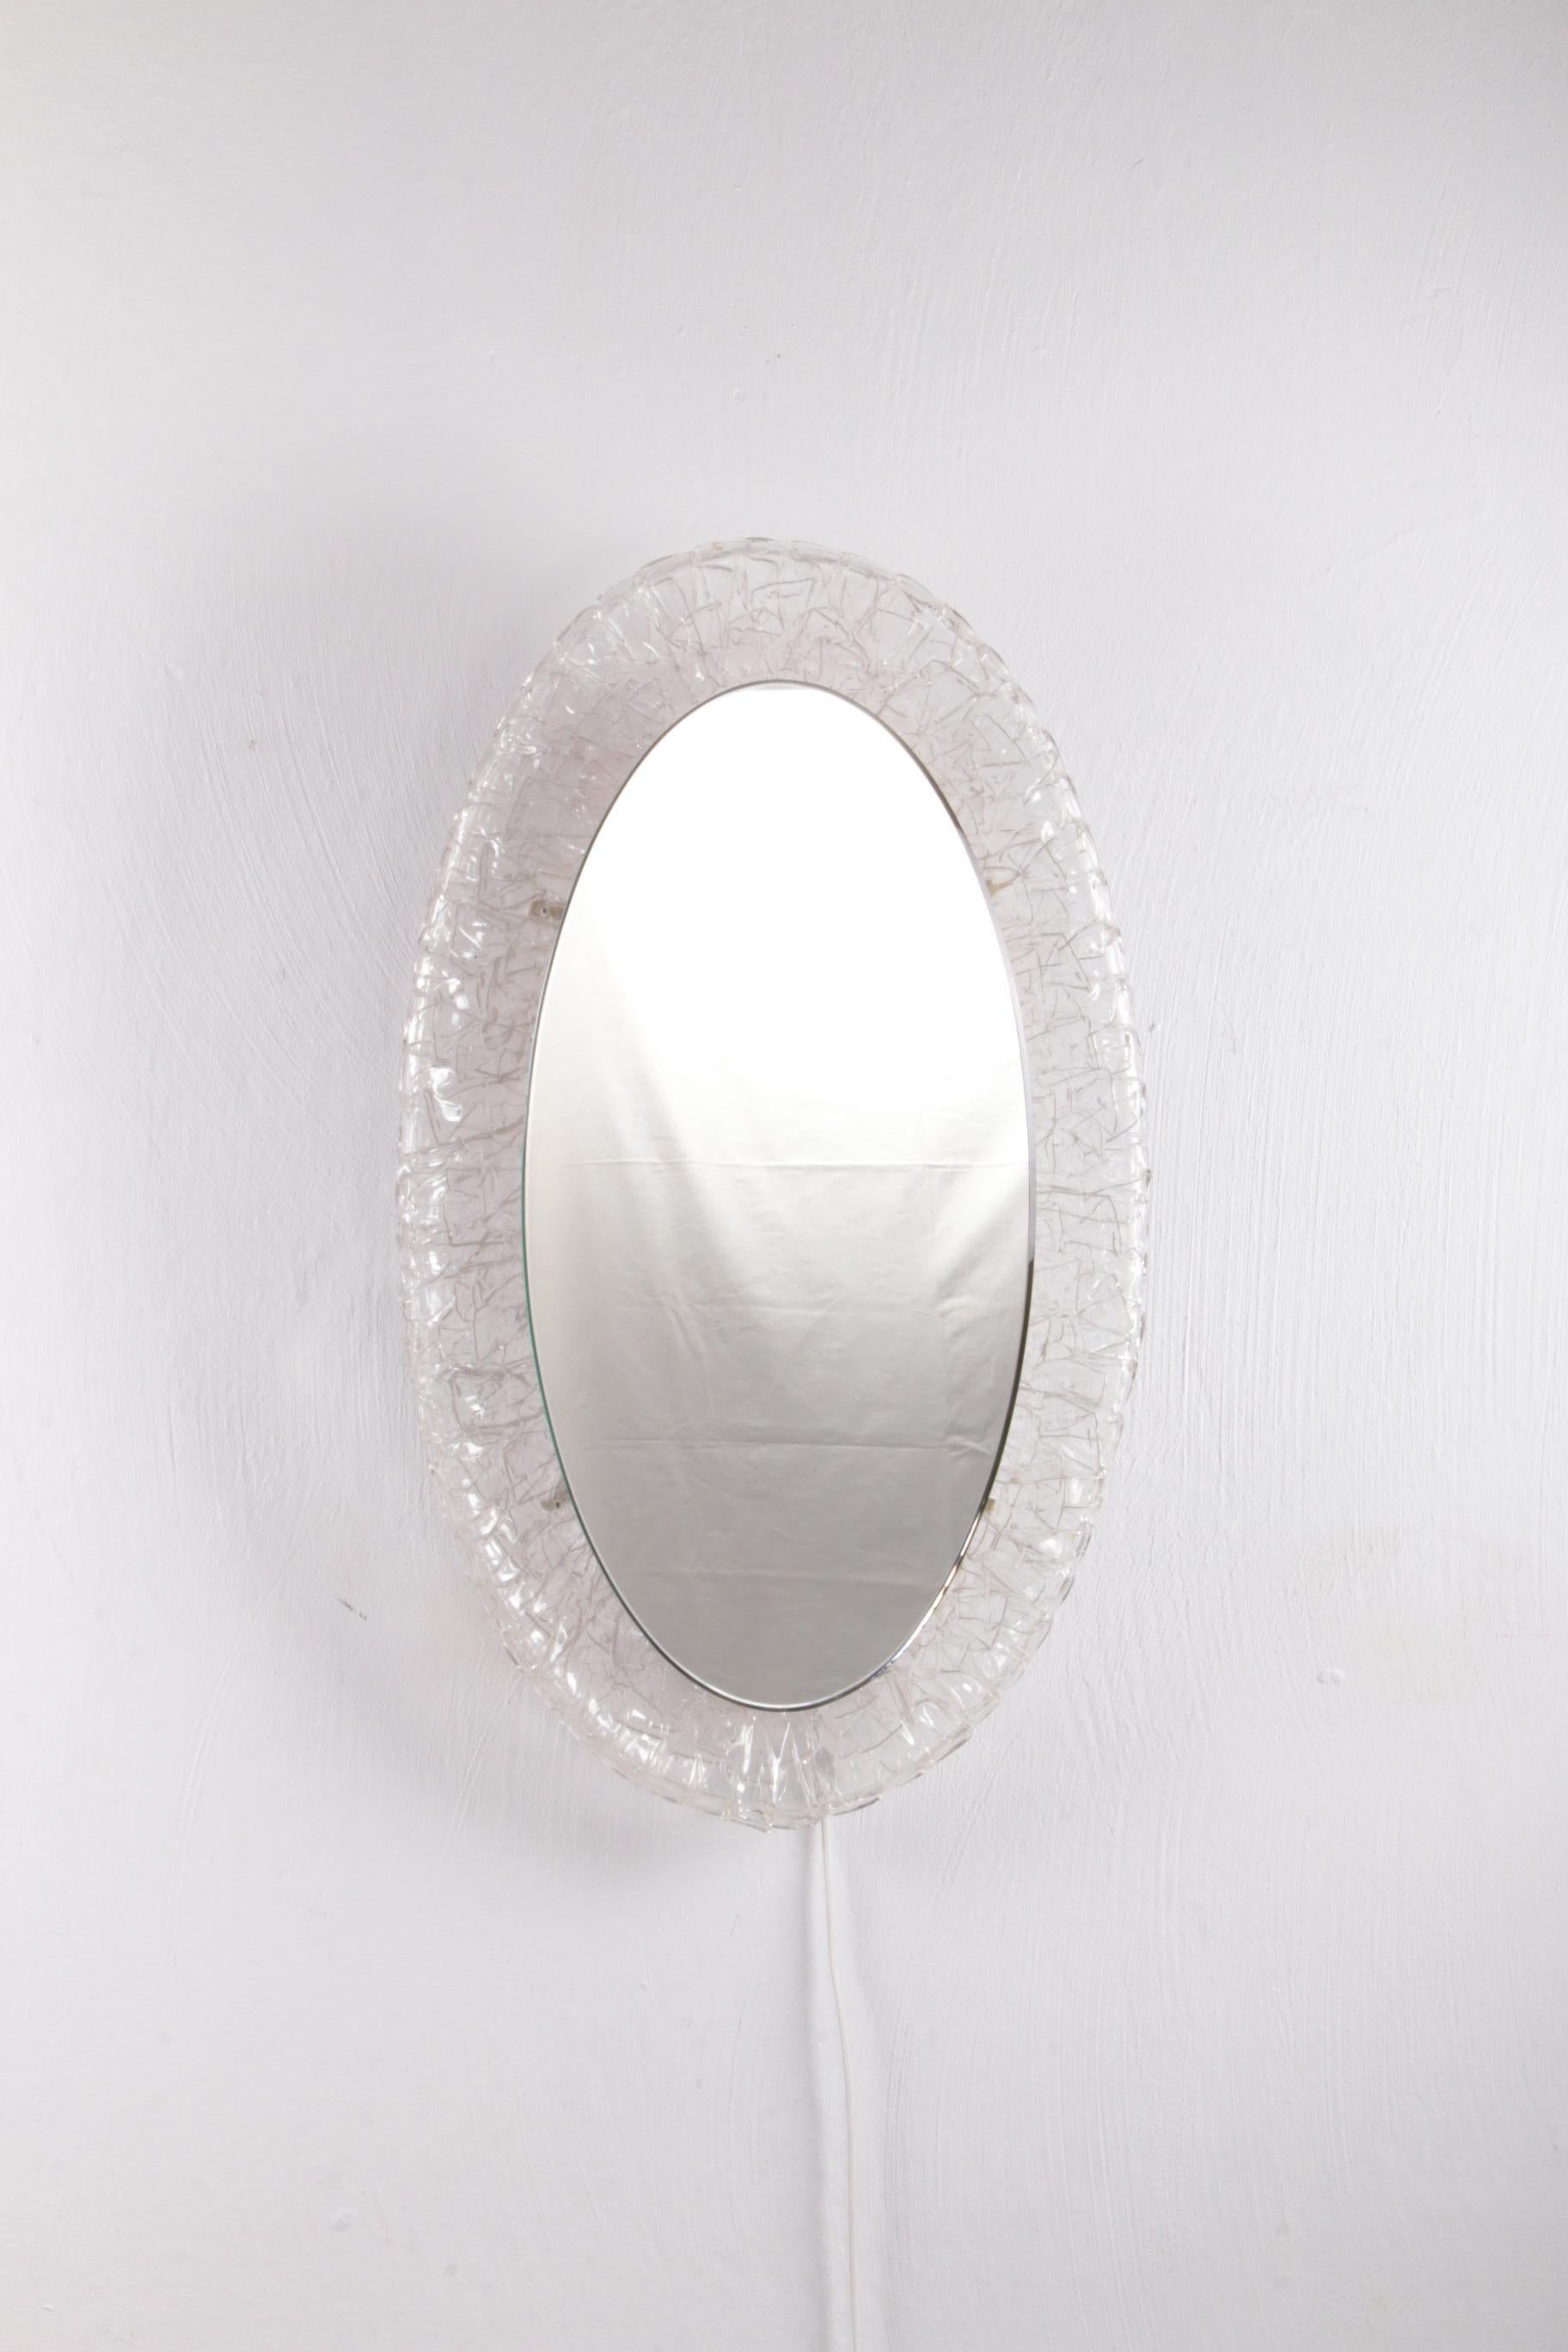 Grand miroir ovale en plexiglas avec éclairage, 1960 Allemagne.


Le miroir ovale est fait de métal avec du plexiglas et a été produit dans les années 1960.

Le miroir est doté d'un éclairage intérieur qui émet une lumière douce et chaude lorsqu'il